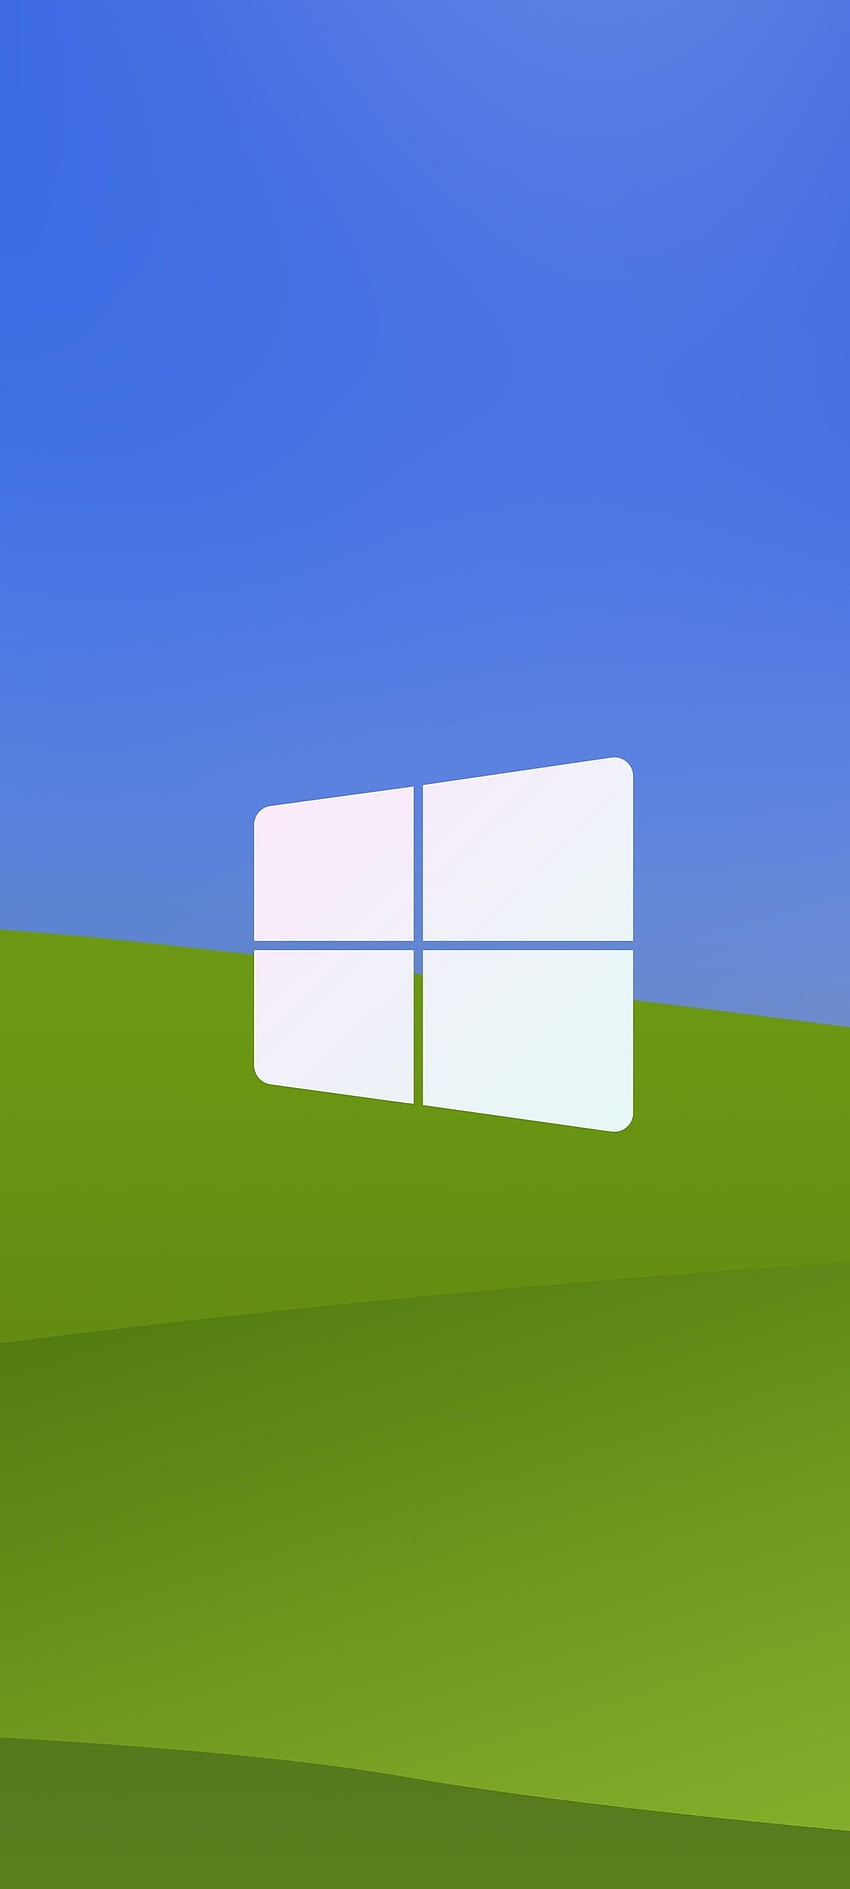 Windows XP Didesain ulang, hijau, windows xp, teknologi, microsoft, , biru, latar belakang, desain, logo wallpaper ponsel HD